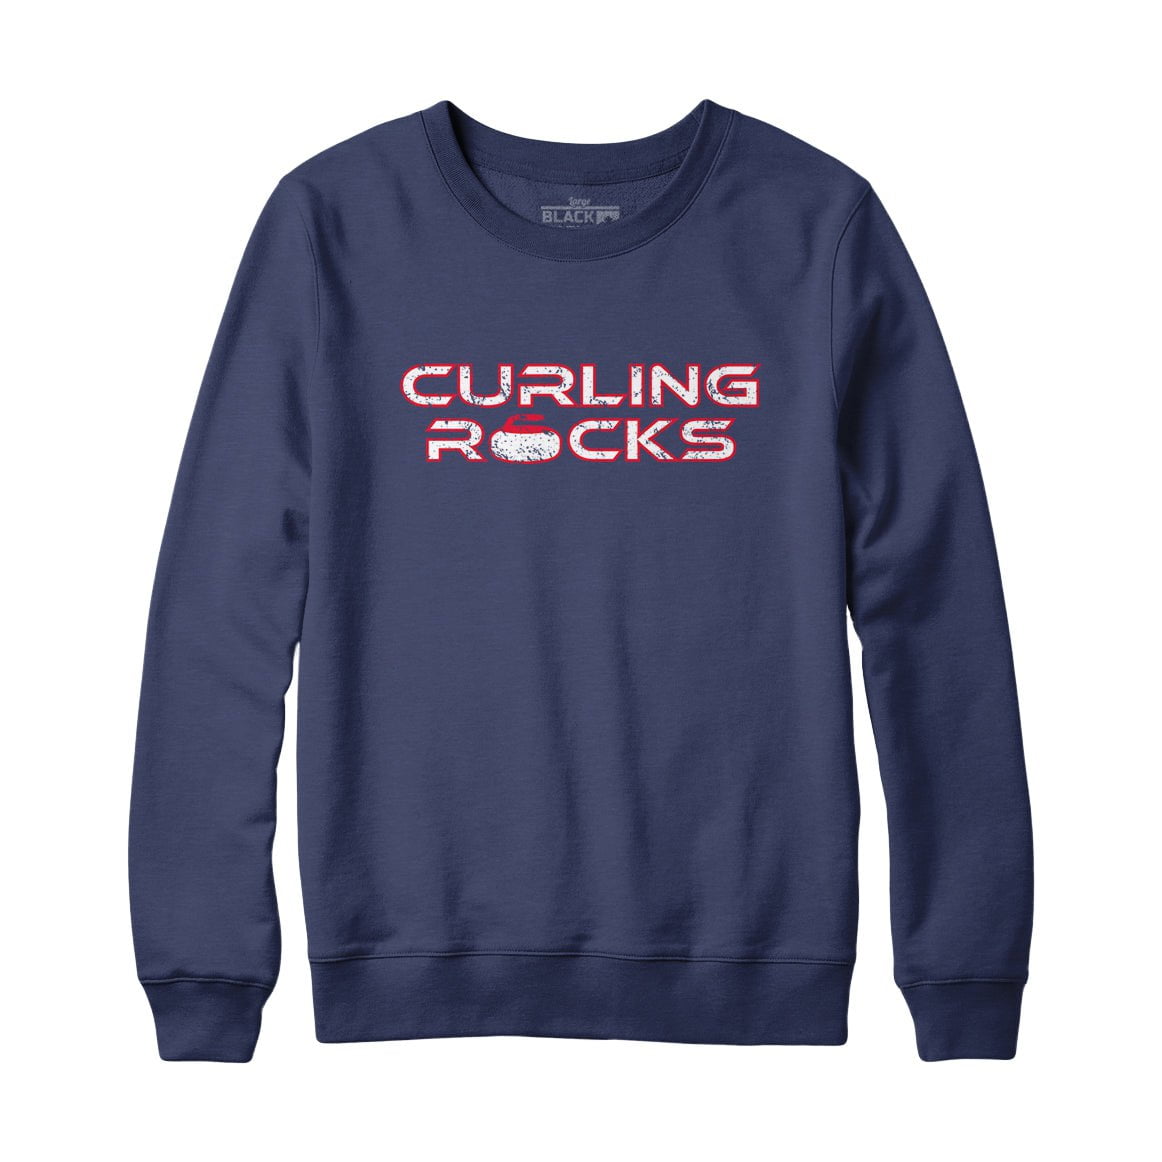 Curling Rocks Sweatshirt and Hoodie